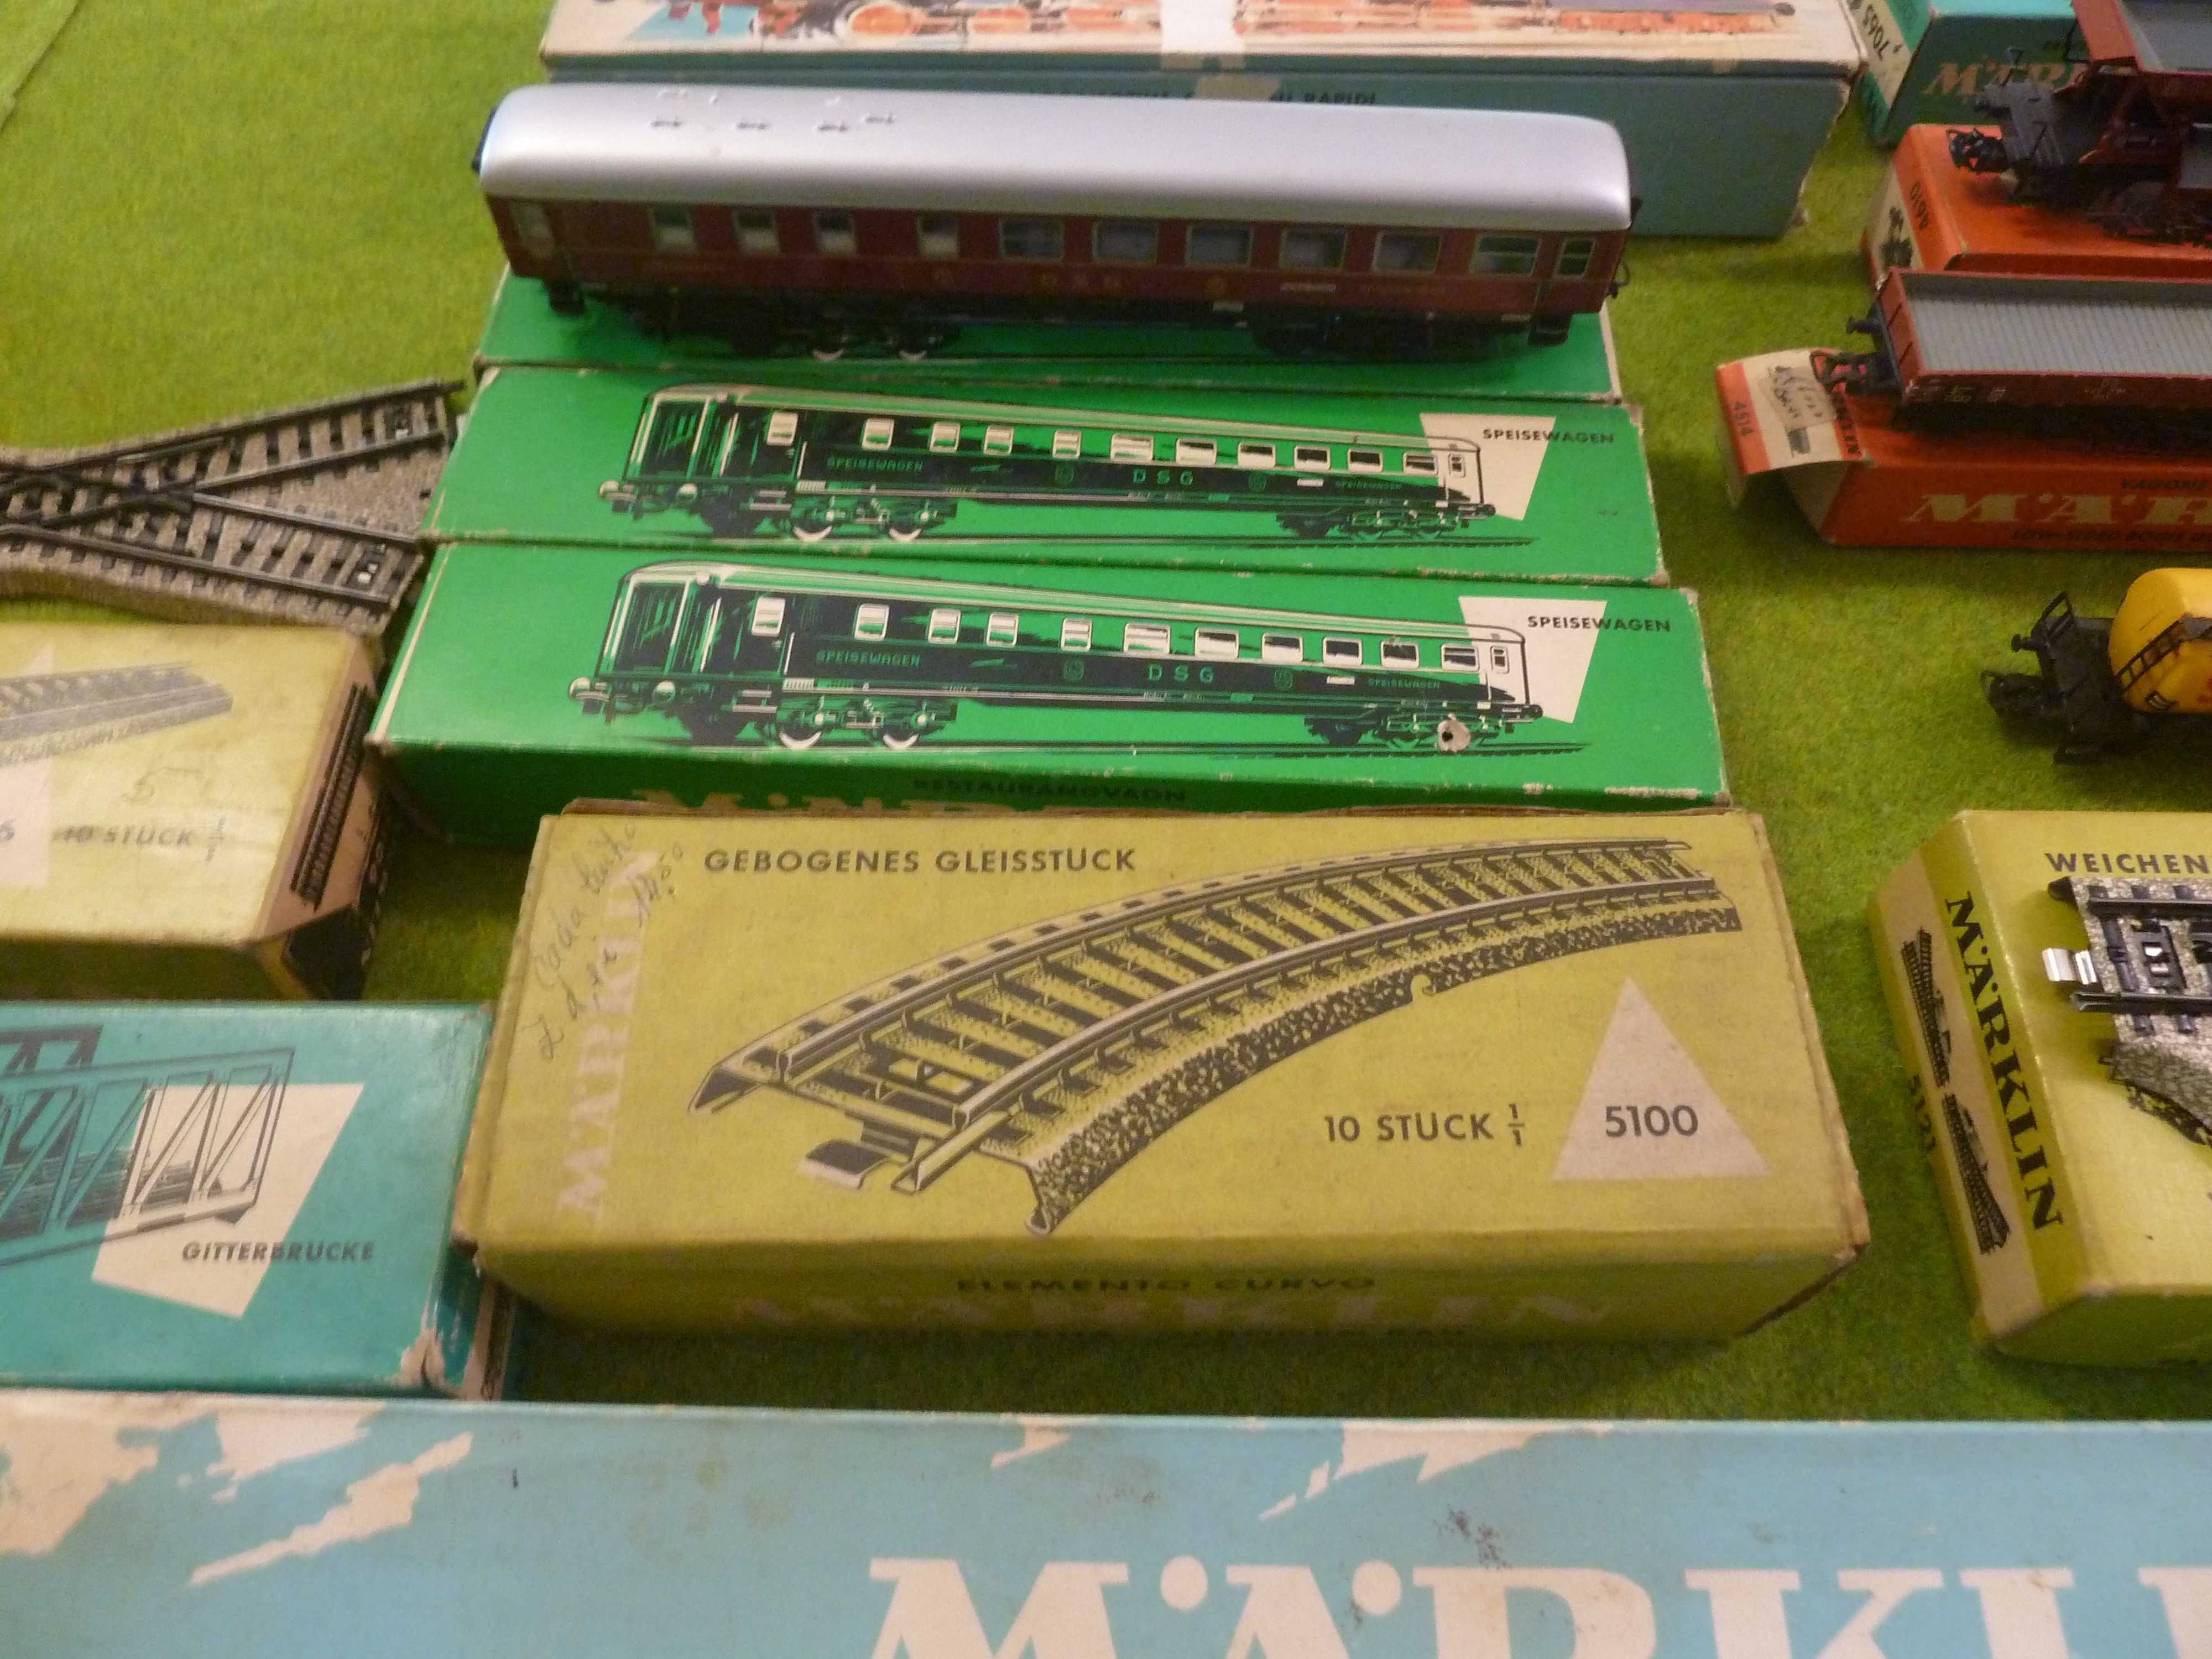 Marklin - Comboio de colecção